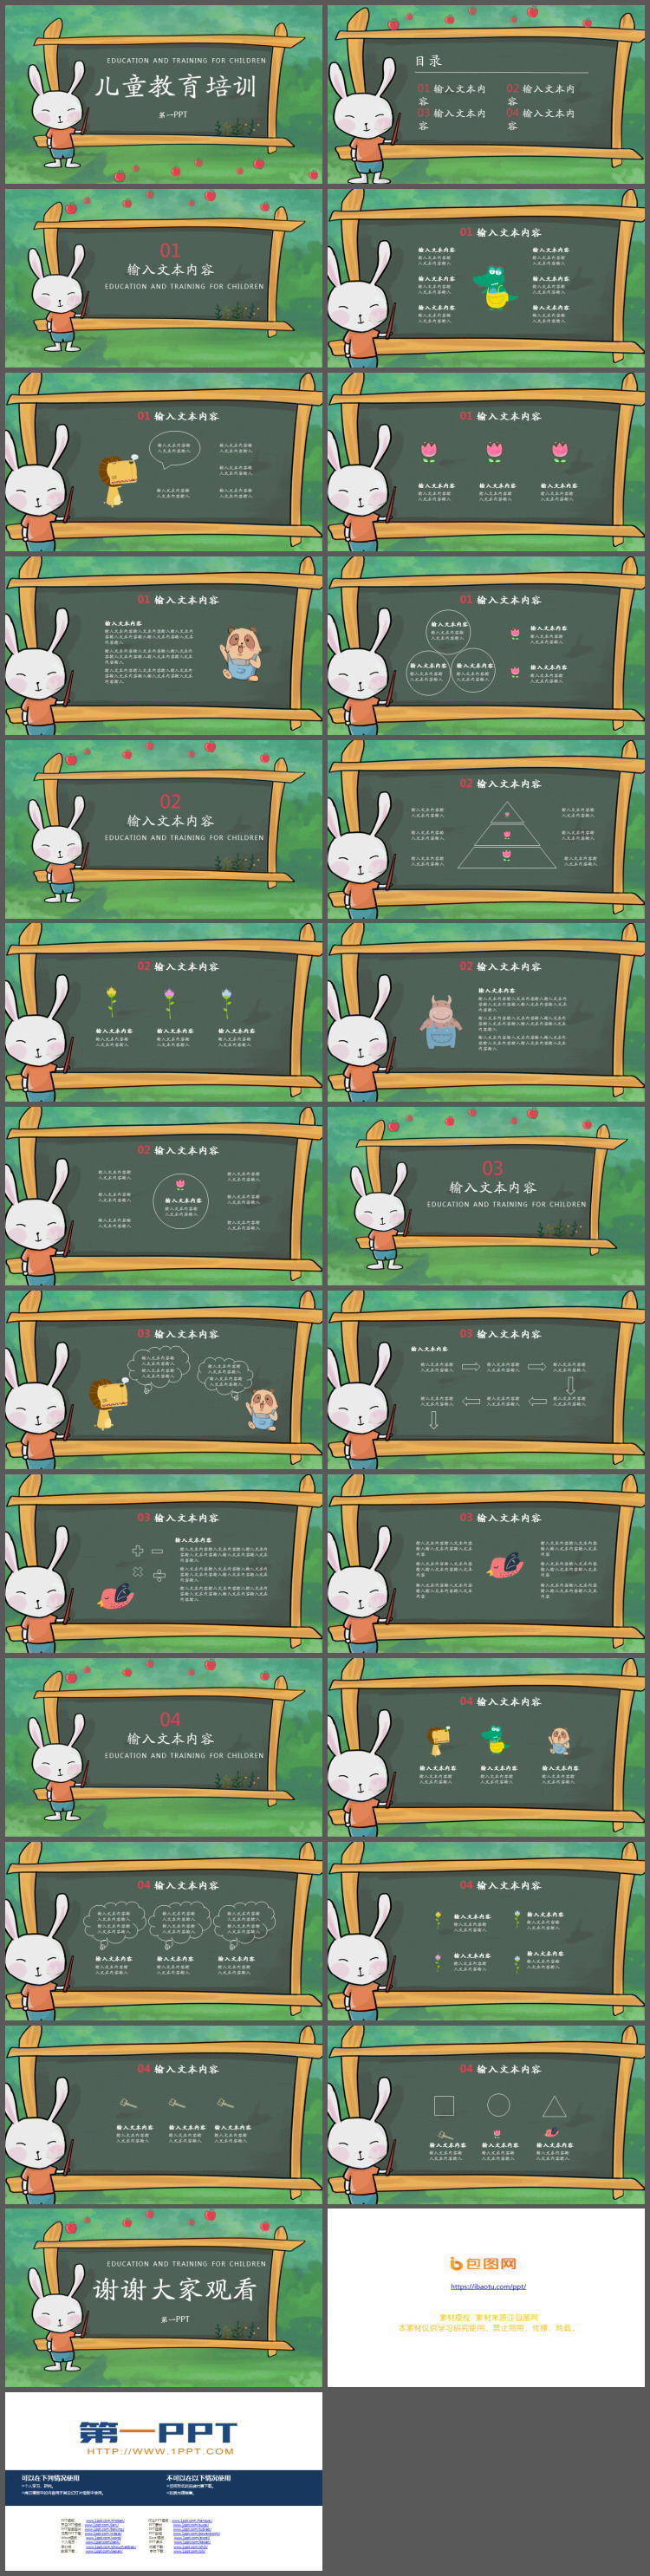 黑板旁边讲课的小兔子背景儿童教育PPT课件模板